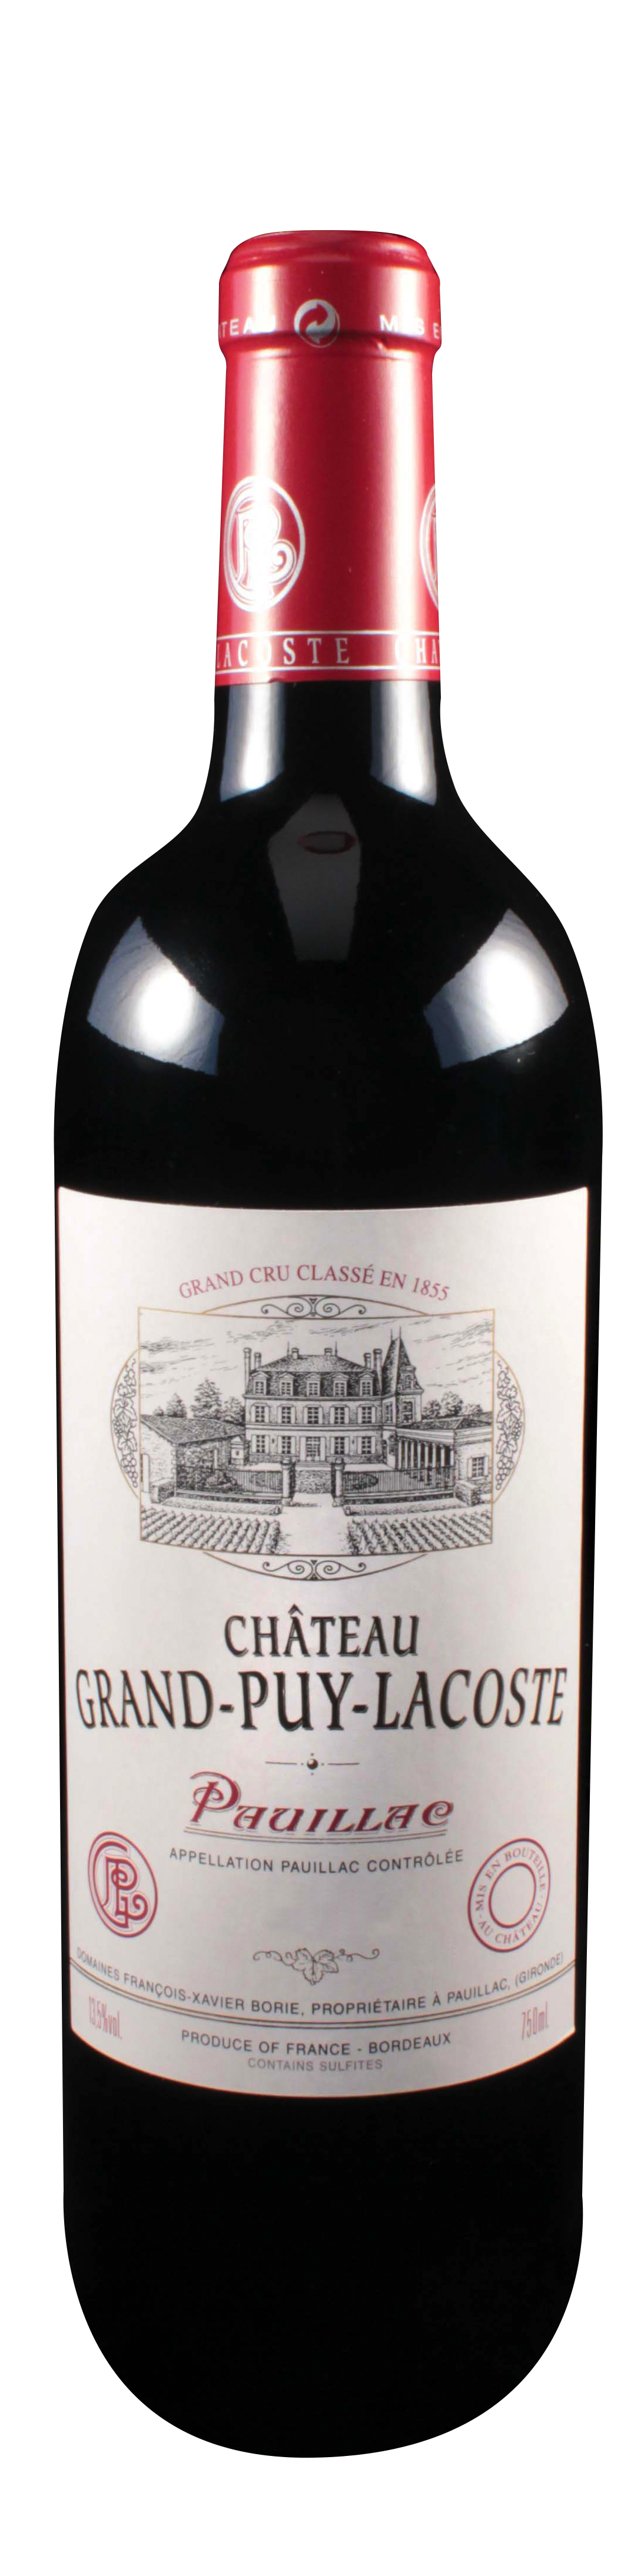 Bottle shot of 2007 Château Grand Puy Lacoste, 5ème Cru Pauillac